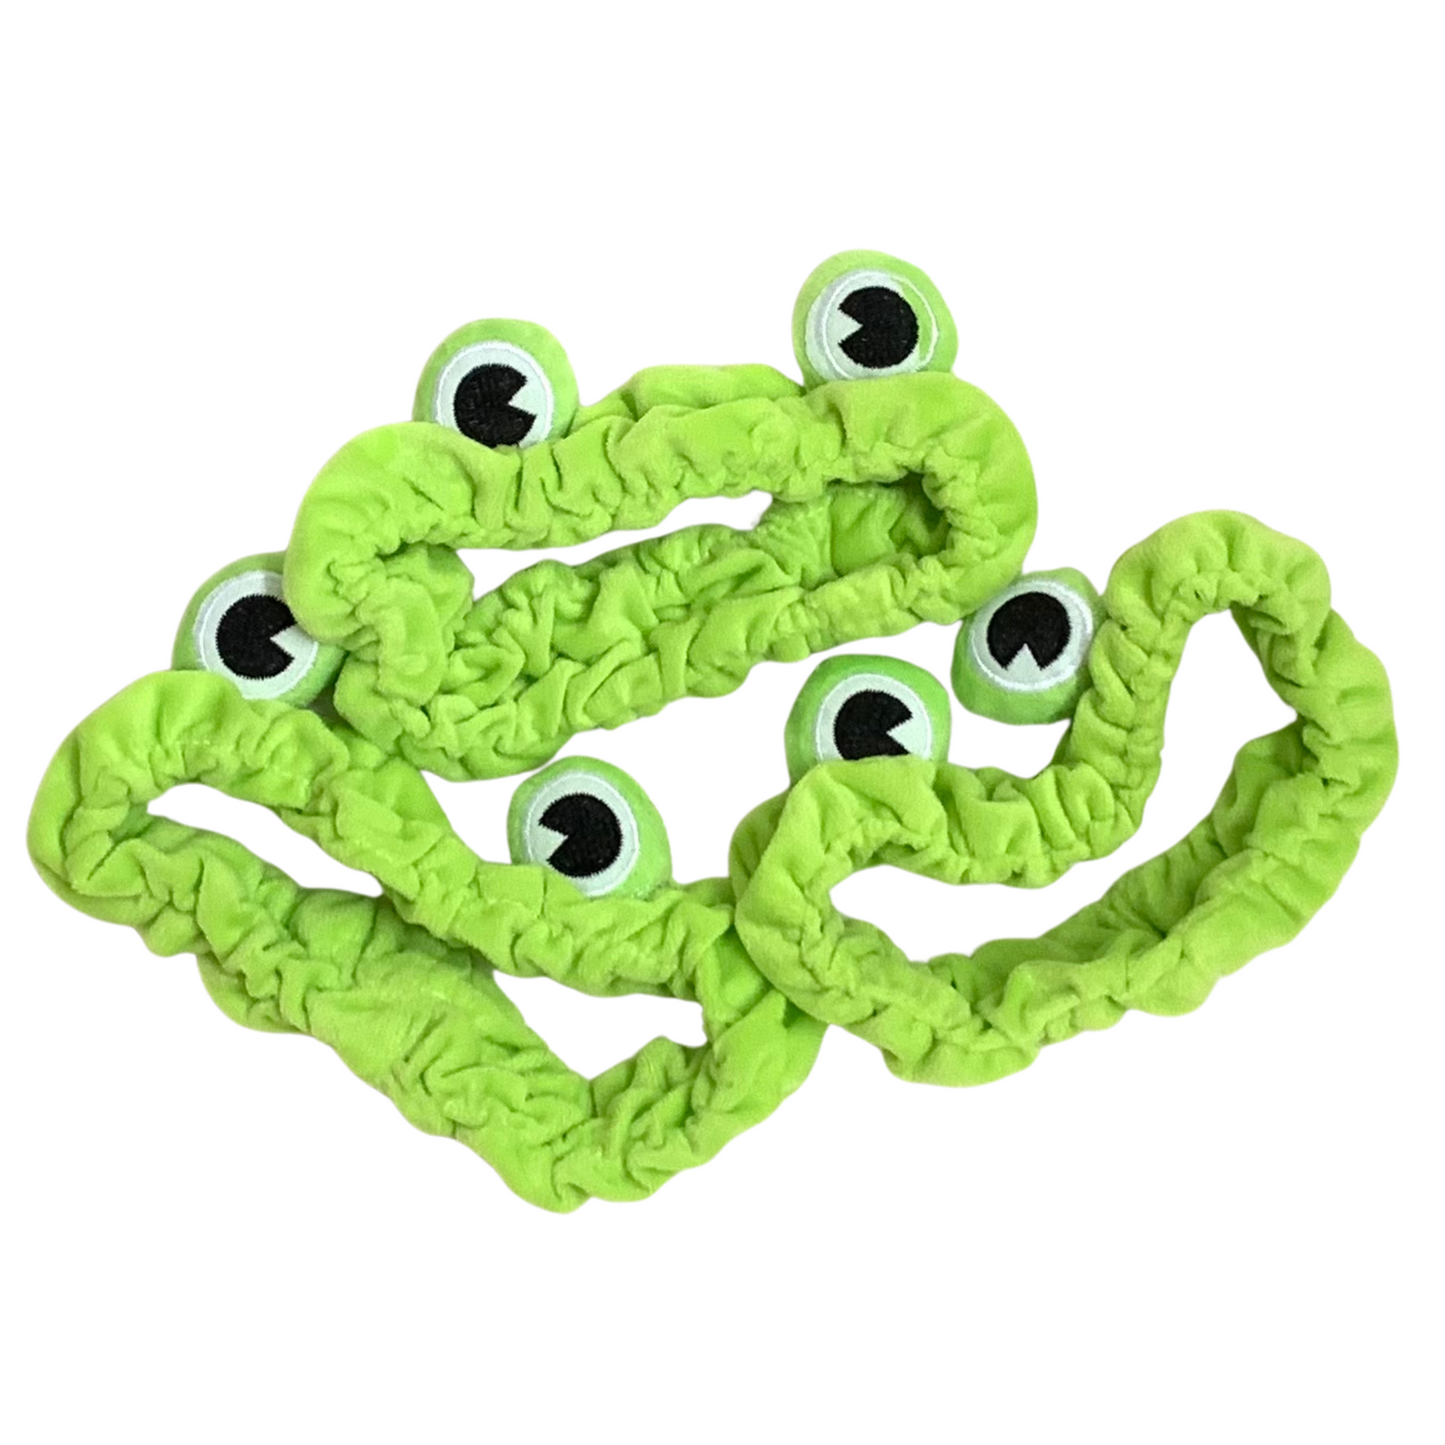 Frog headband